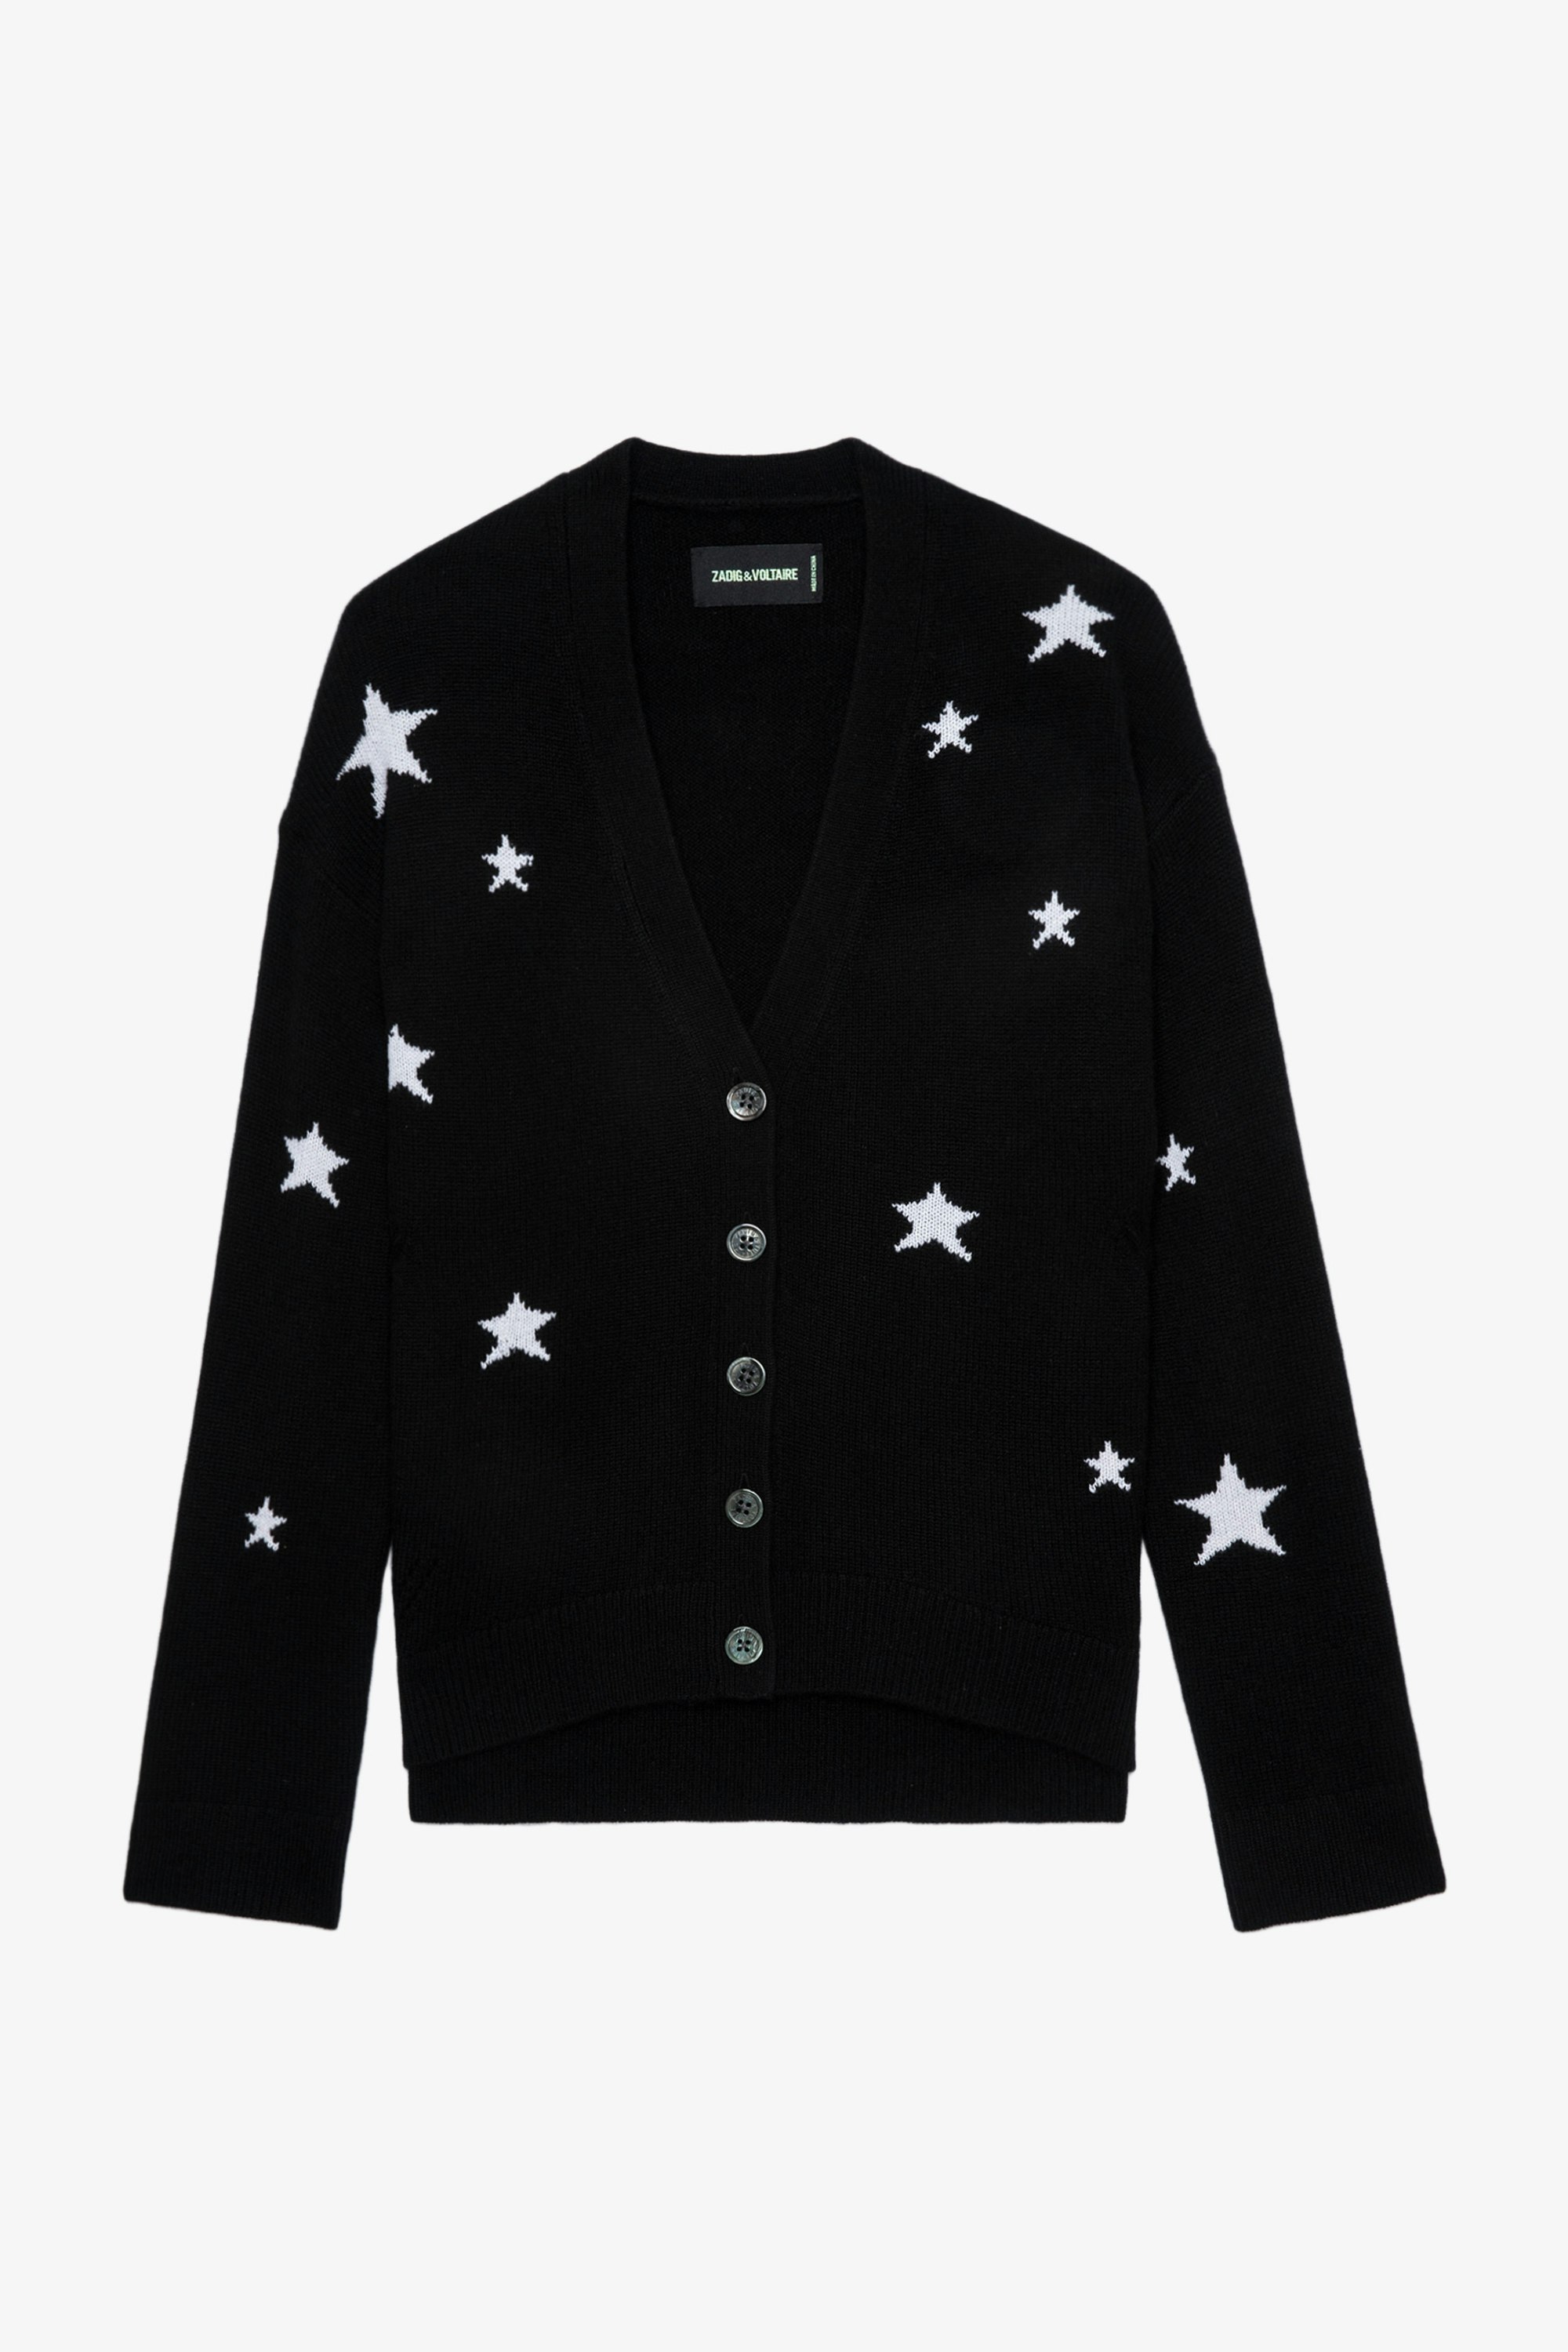 Gilet Mirka Stars Cachemire - Gilet en cachemire noir boutonné à motifs étoiles contrastées.